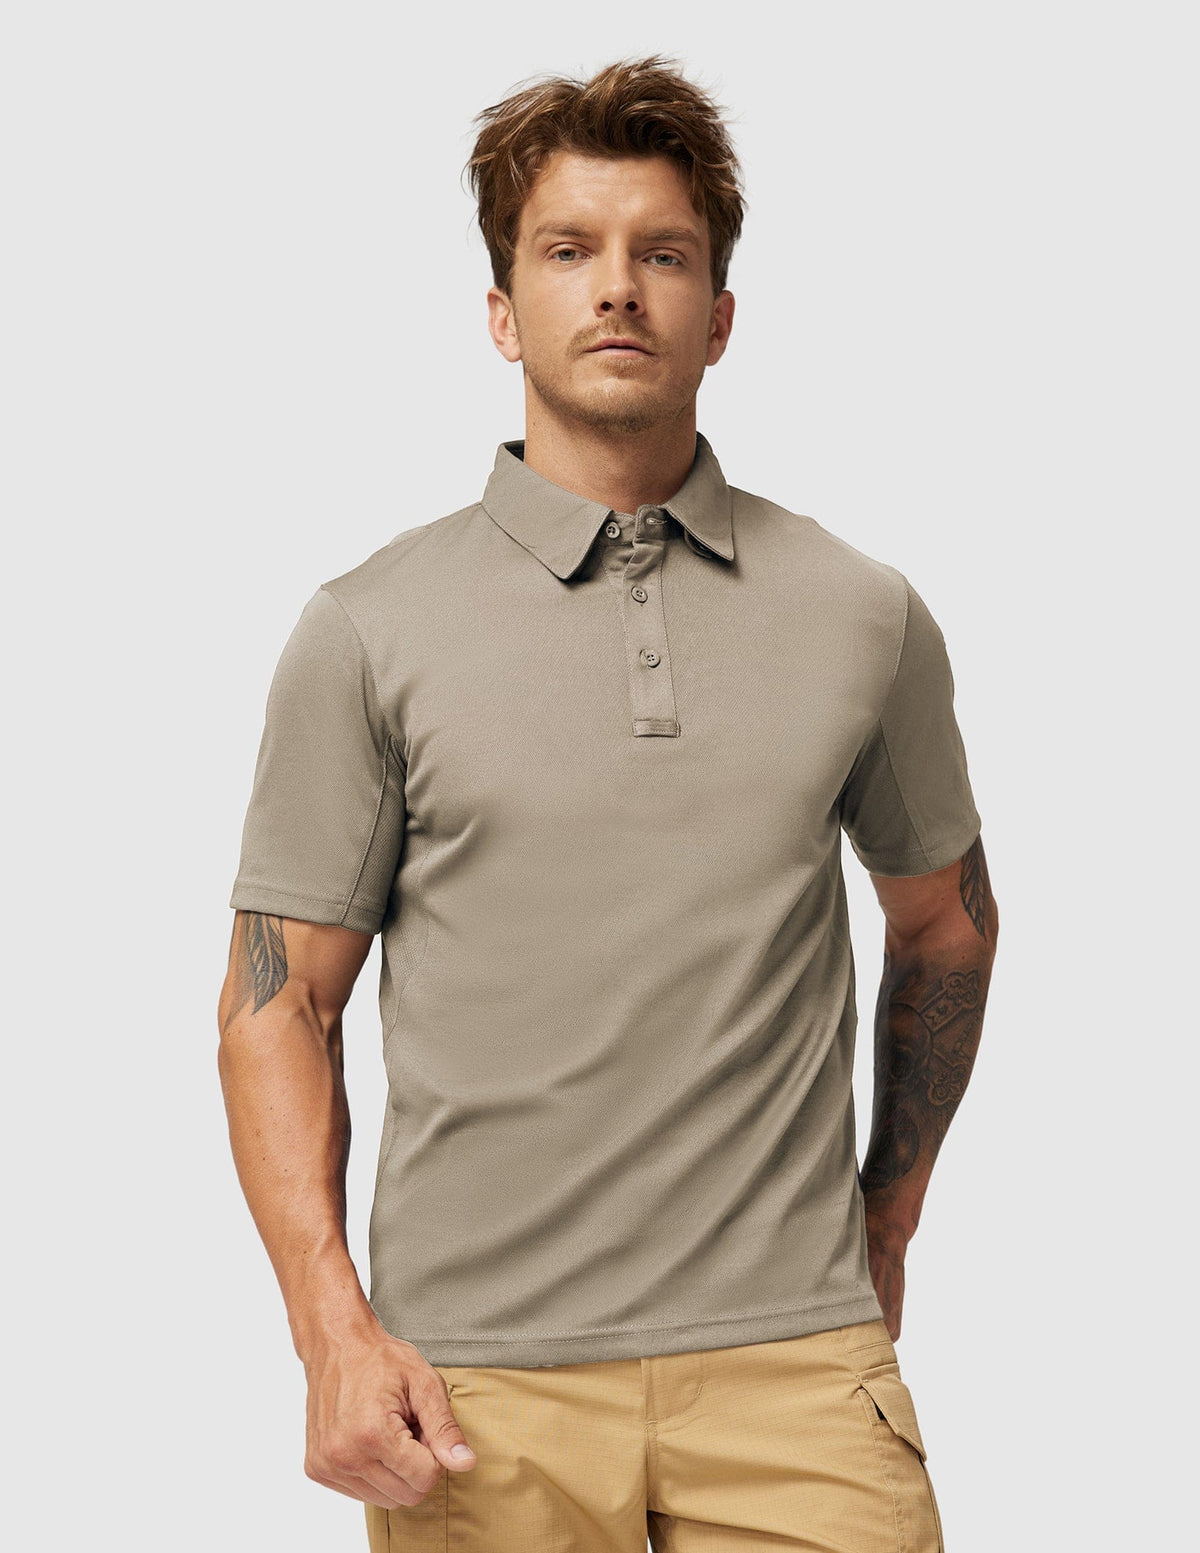 Men's Tactical Polo Shirts Outdoor Performance Collared Shirt Men Polo Khaki / S MIER